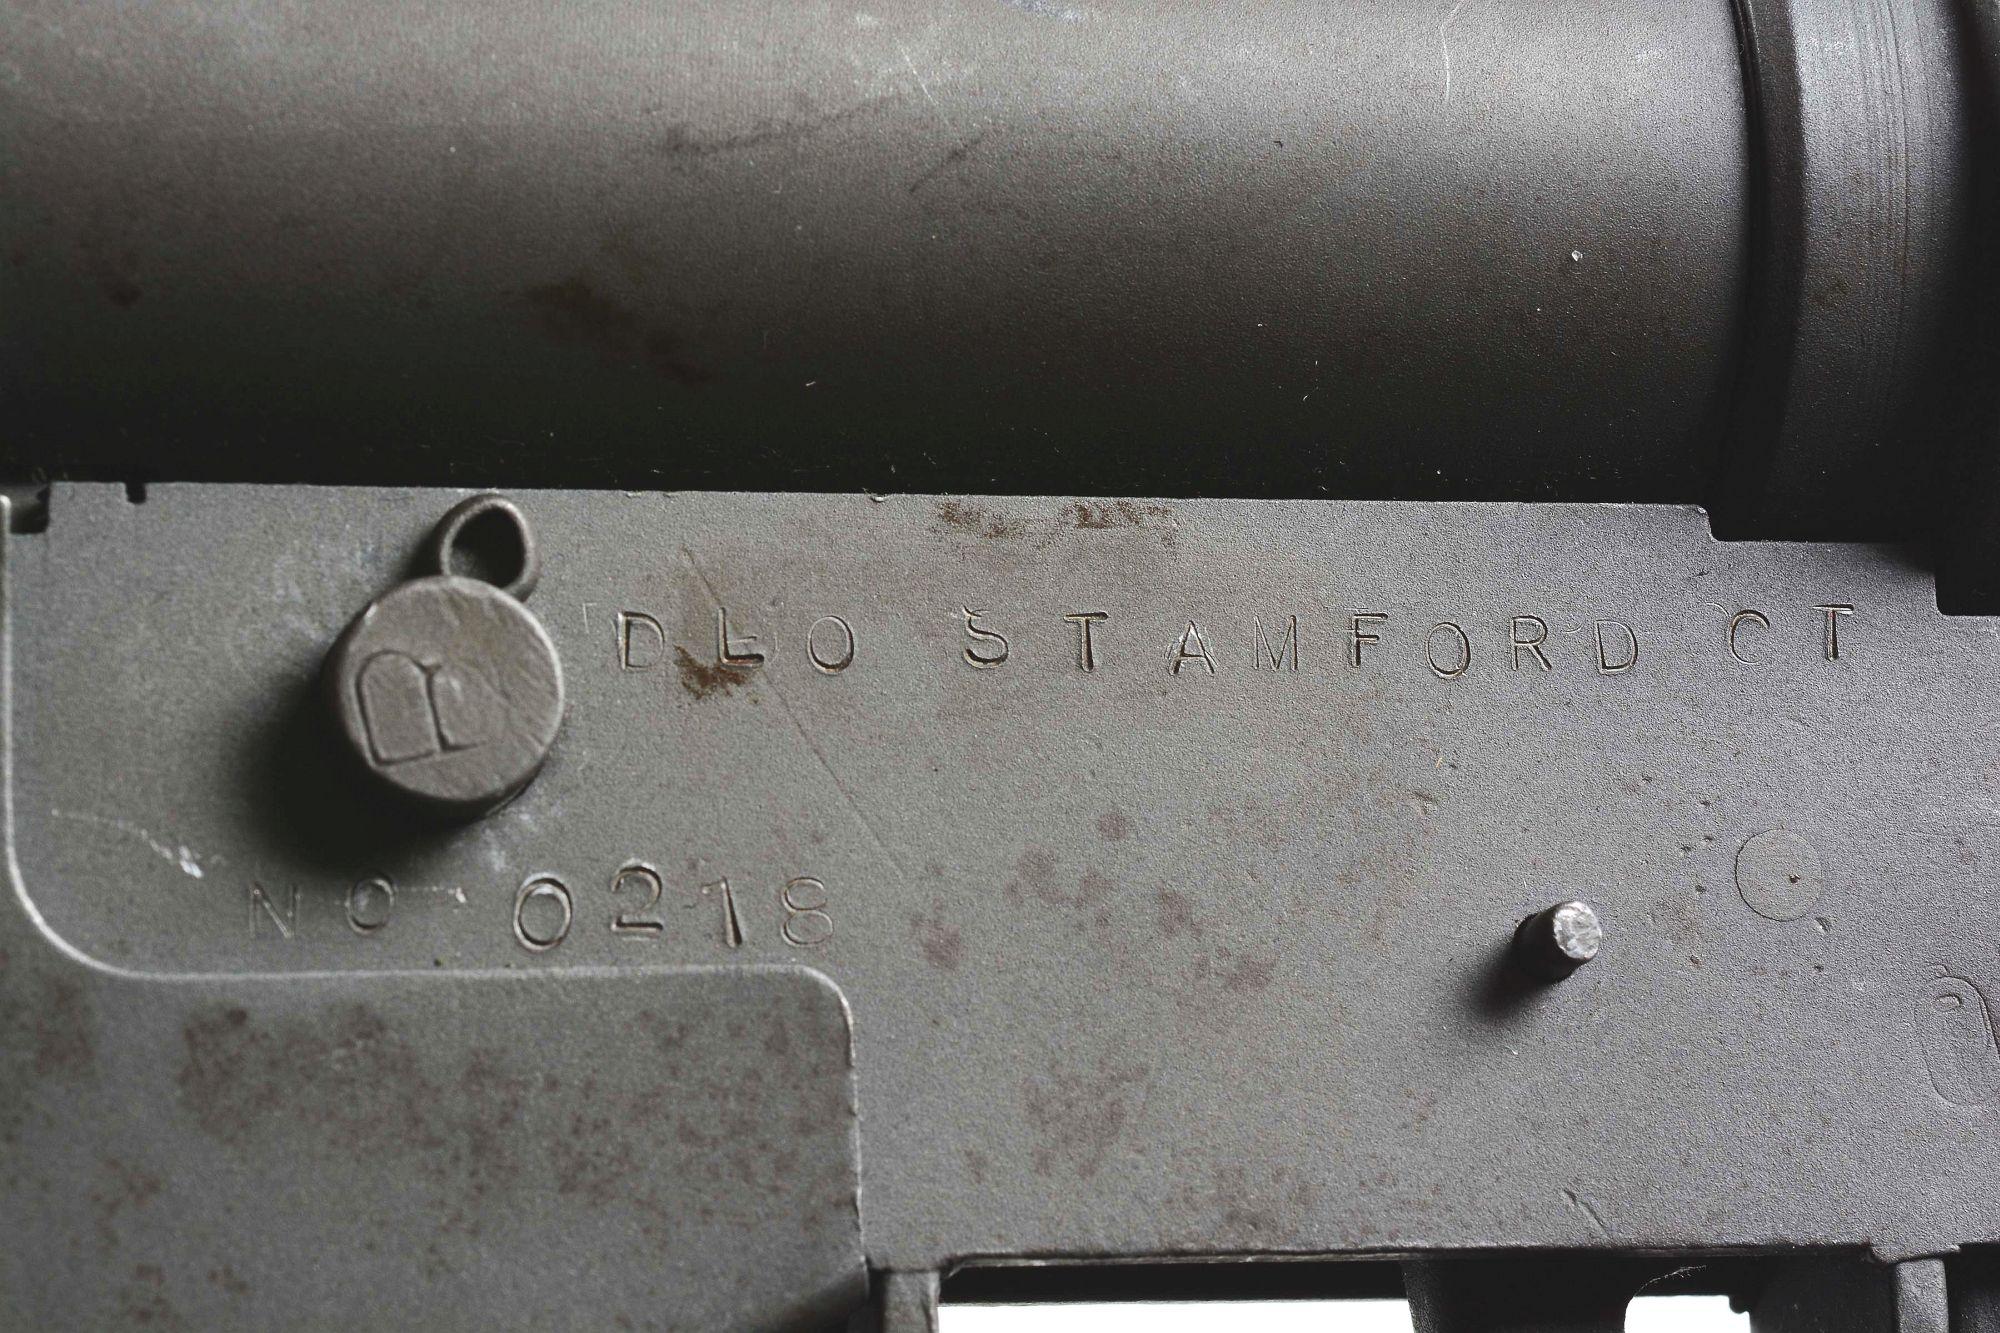 (N) DLO REGISTERED WORLD WAR II BRITISH STEN MK II MACHINE GUN WITH SPARE STEN MK II PARTS KIT (FULL